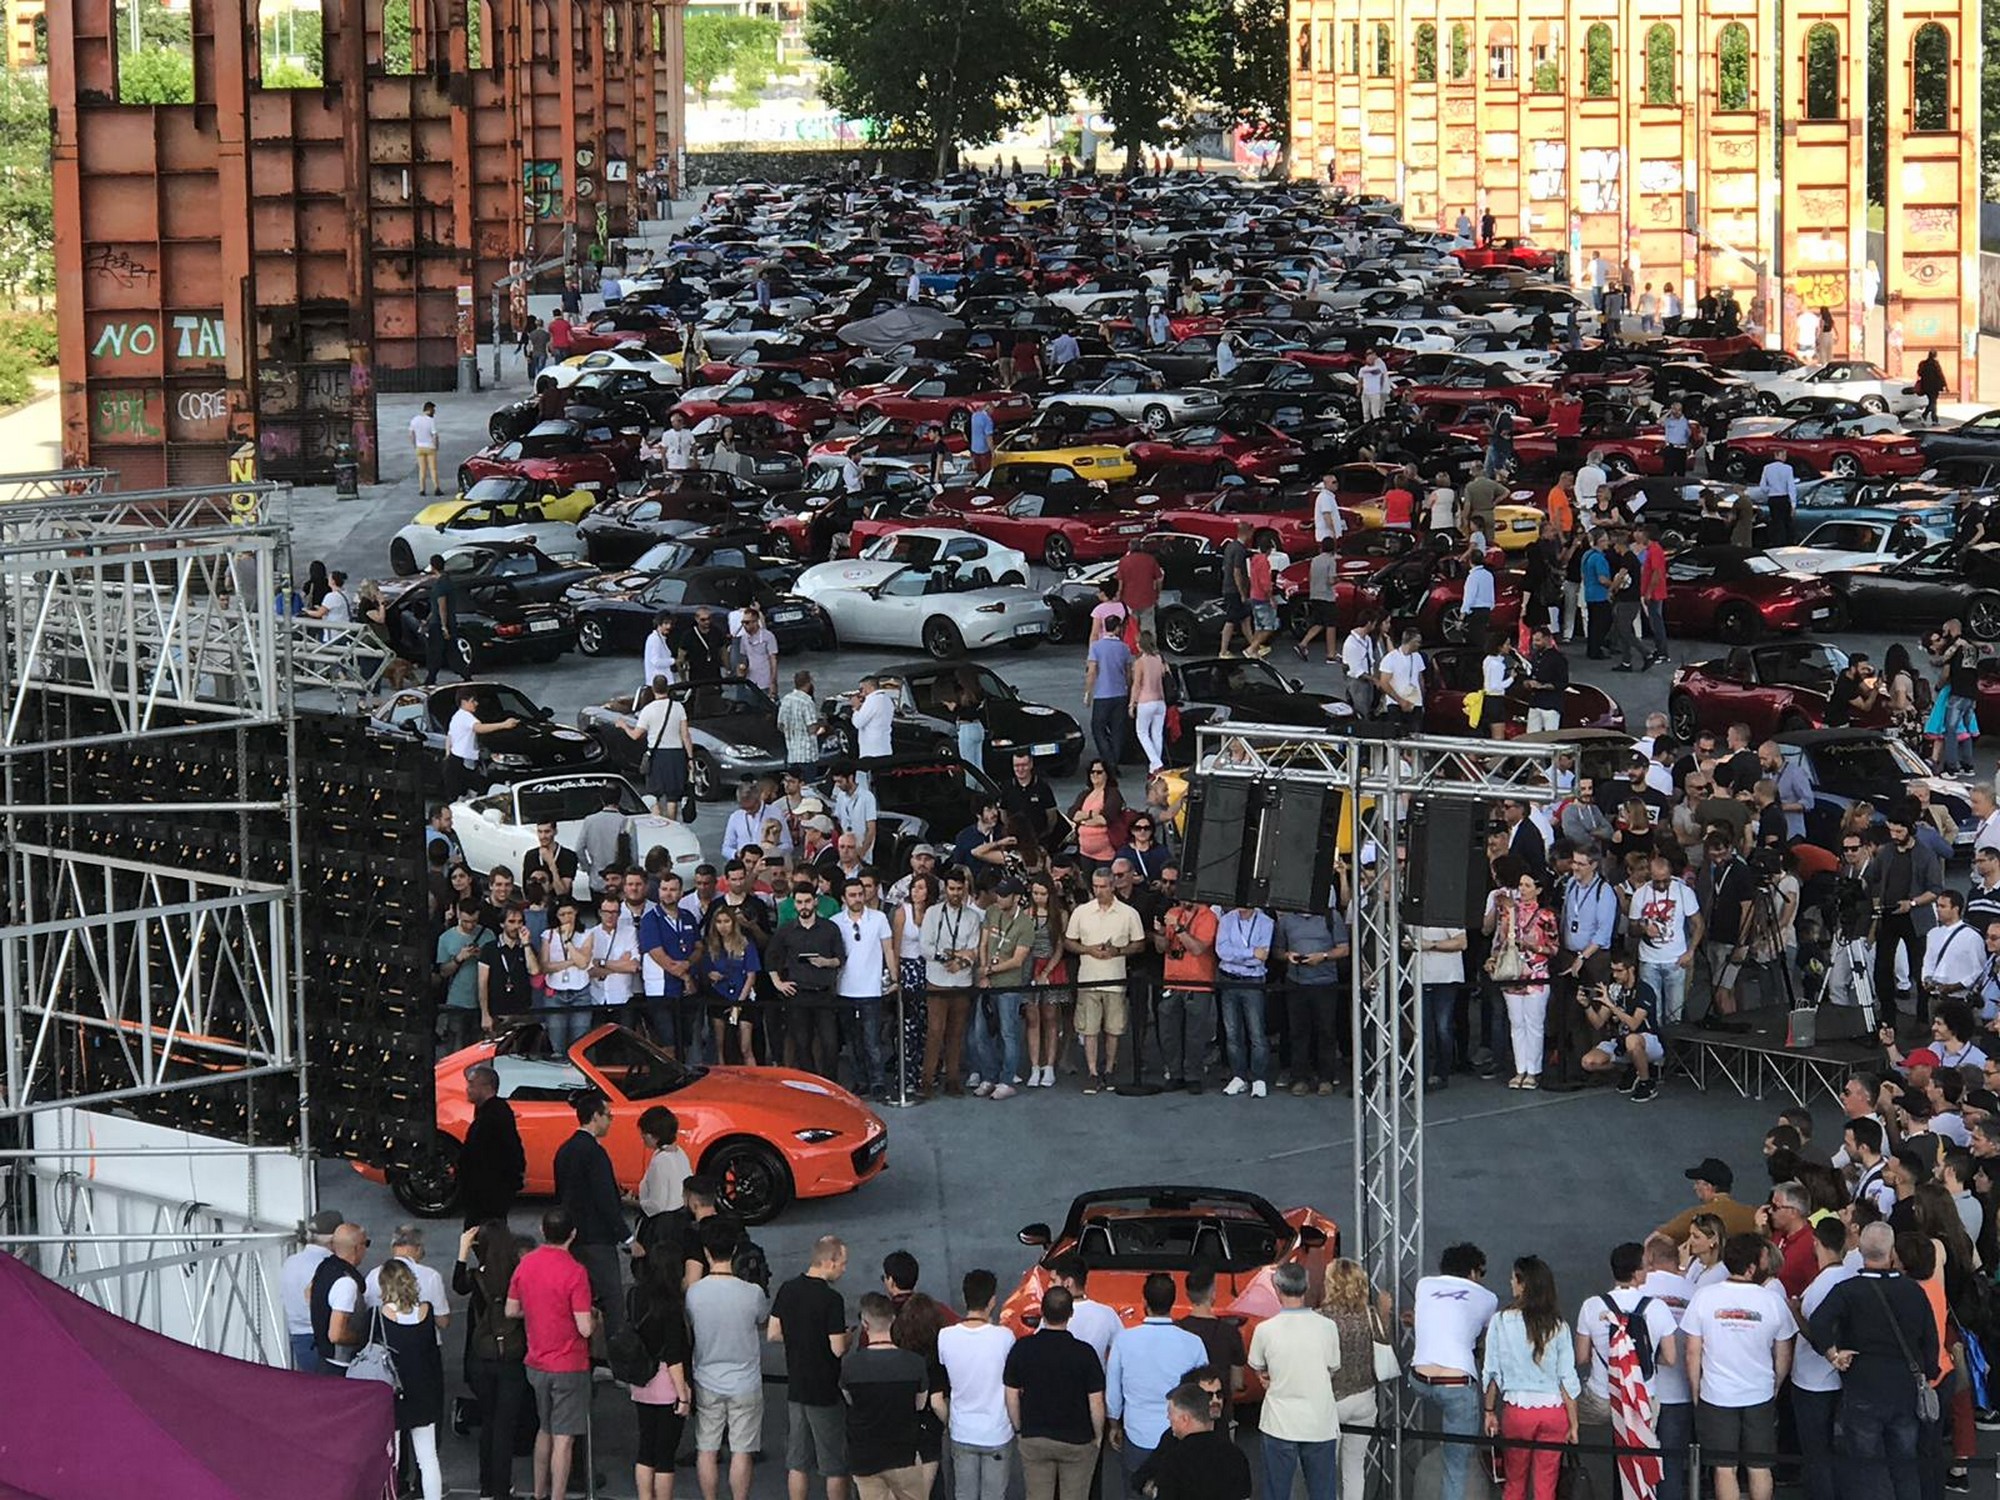 Salone dell'Auto di Torino - Parco Valentino Motor Show 2019